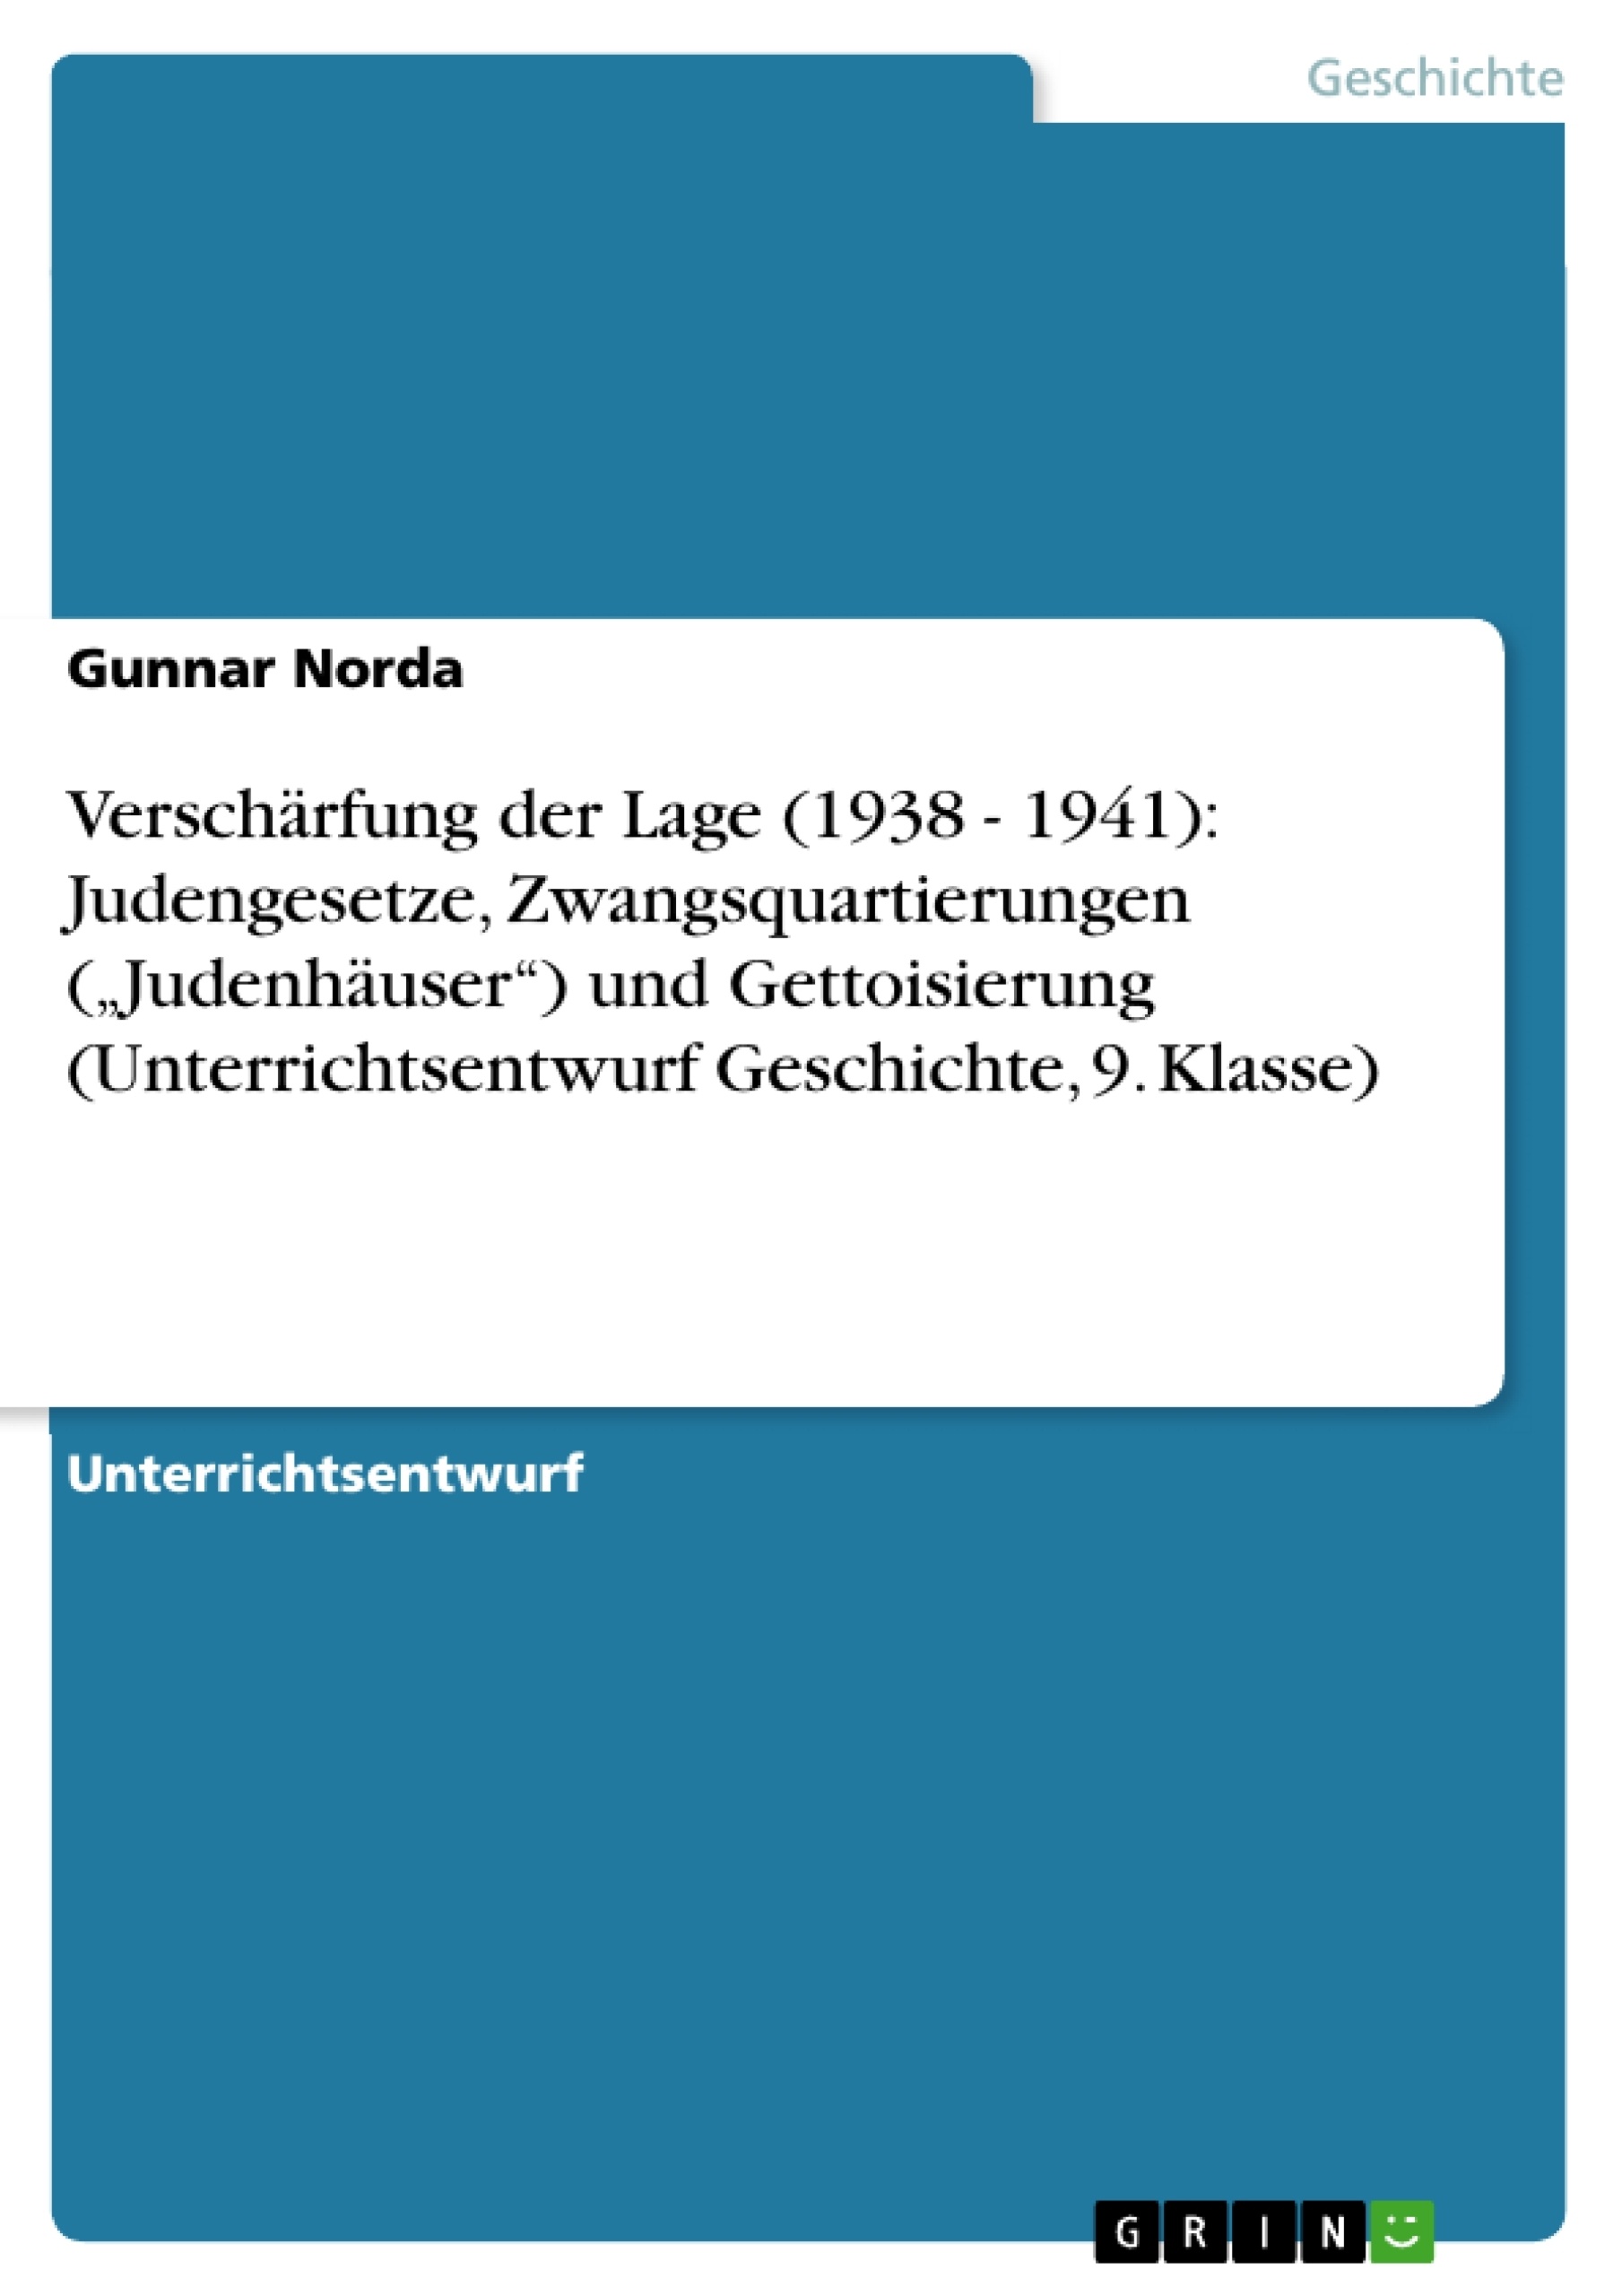 Titre: Verschärfung der Lage (1938 - 1941): Judengesetze, Zwangsquartierungen („Judenhäuser“) und Gettoisierung (Unterrichtsentwurf Geschichte, 9. Klasse)